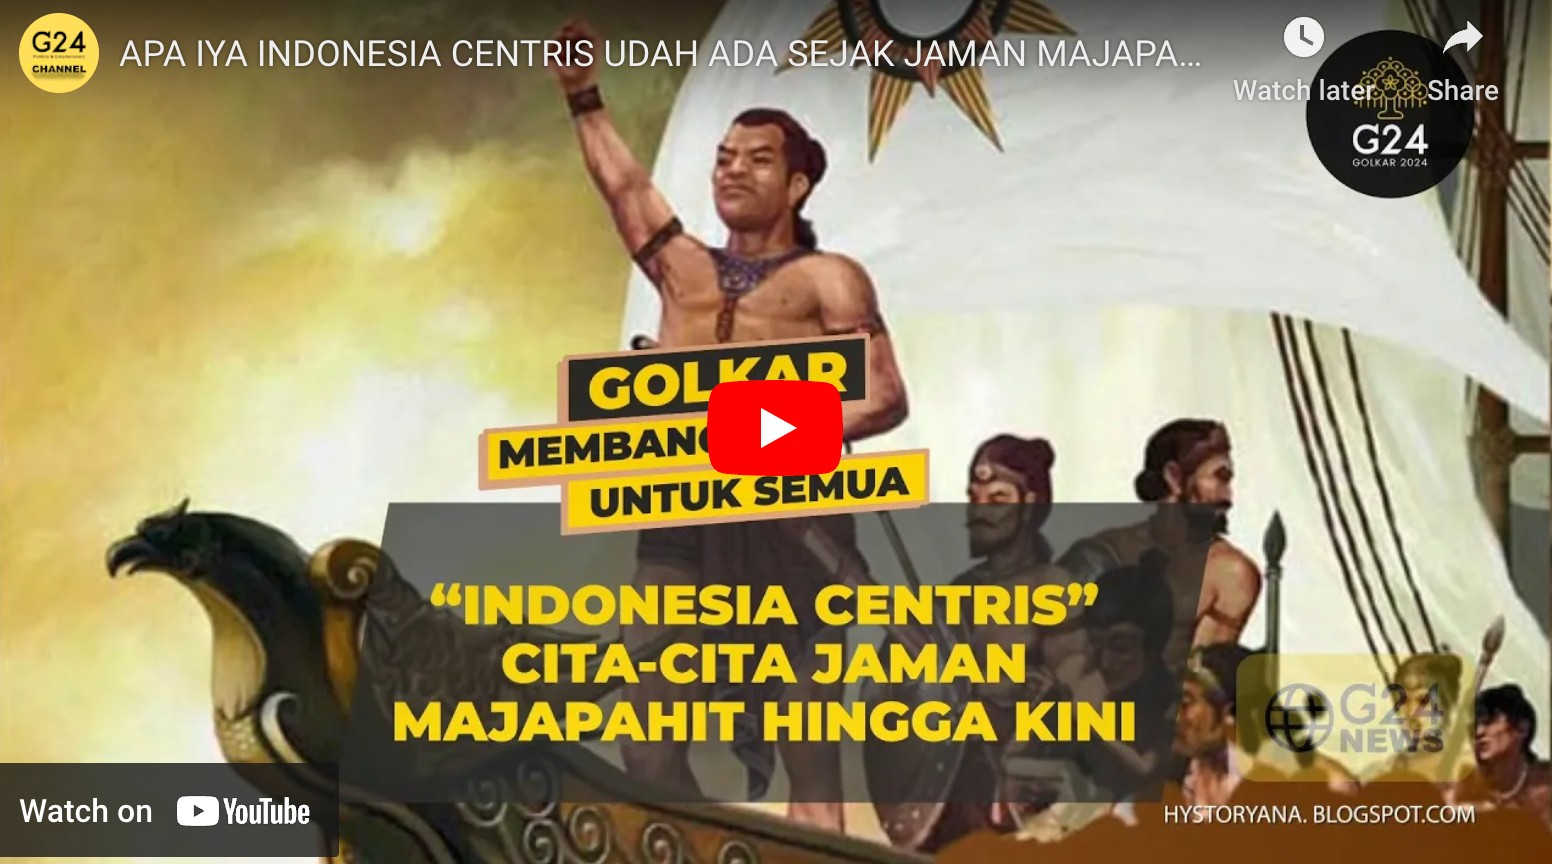 Indonesia sentris cita cita